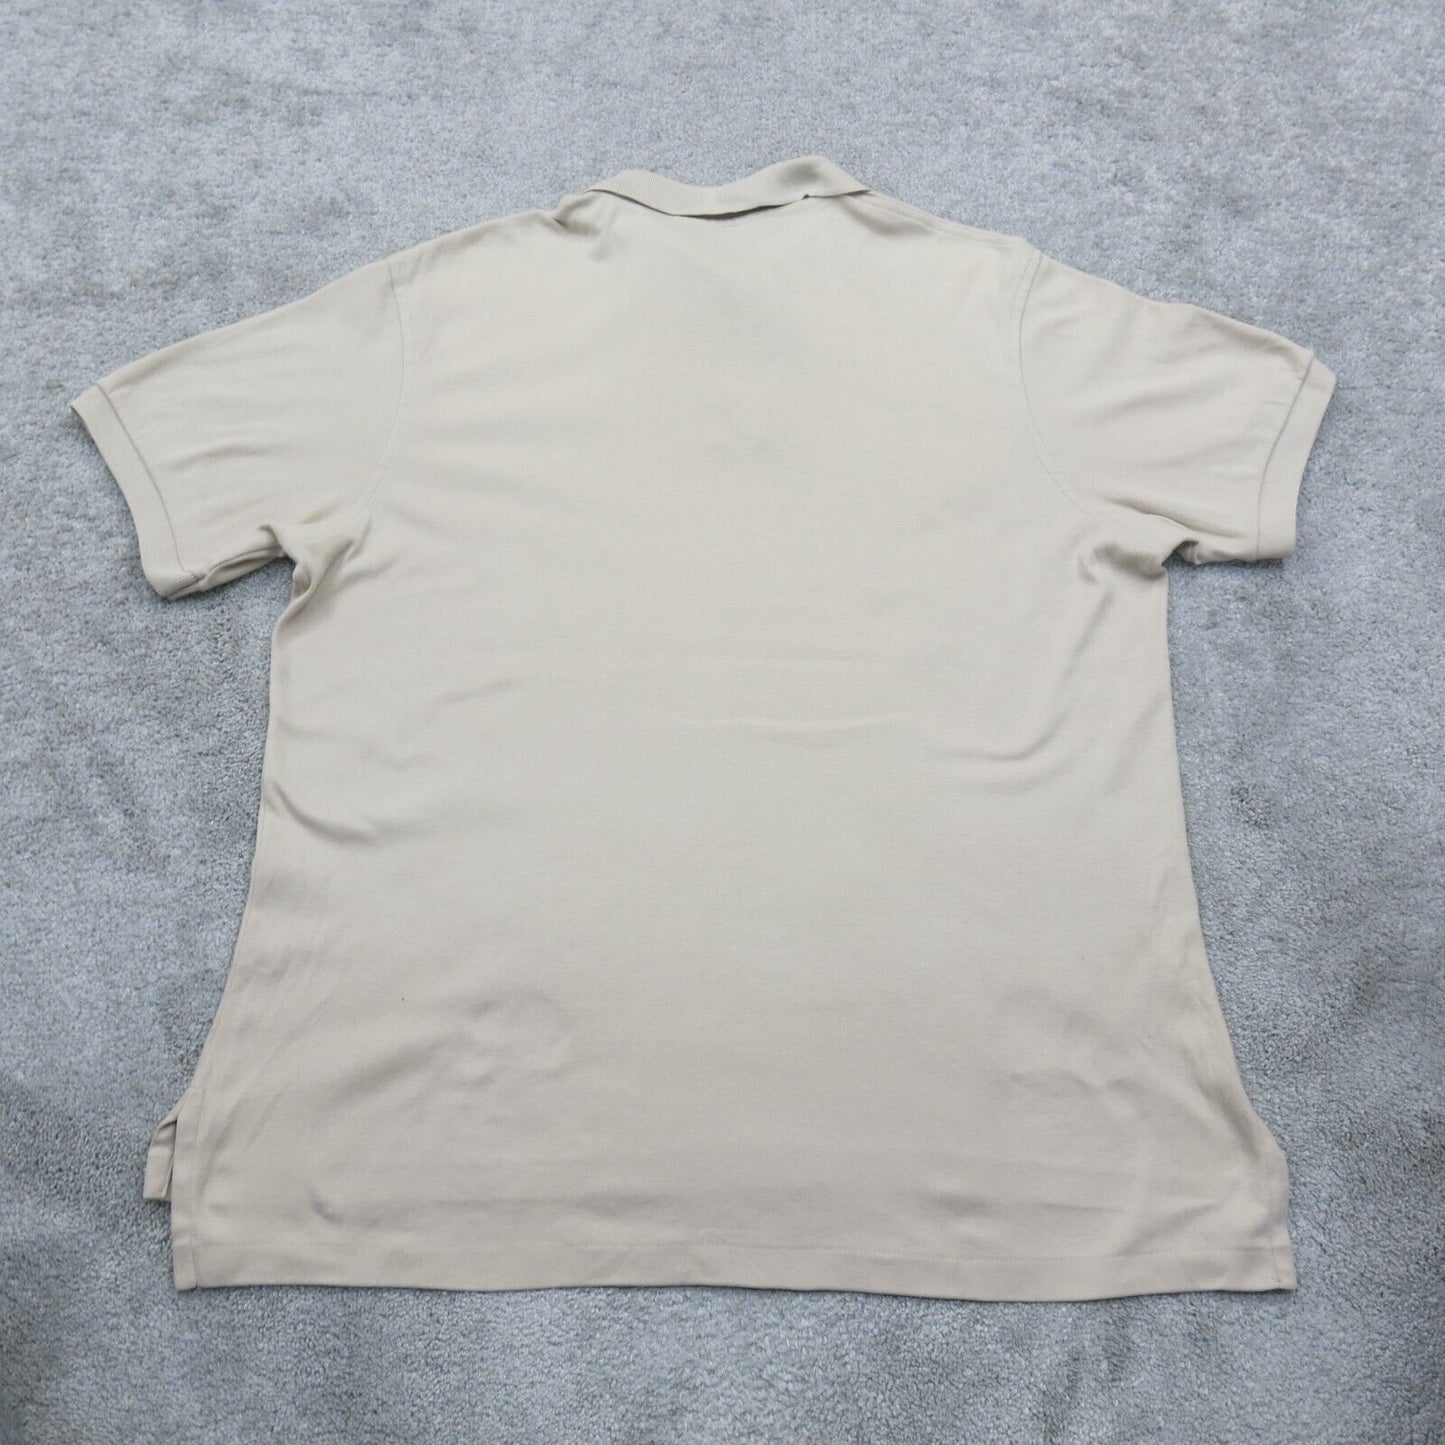 Lands End Mens Polo Shirt 100%Cotton Short Sleeve Side Slit Beige Size Large